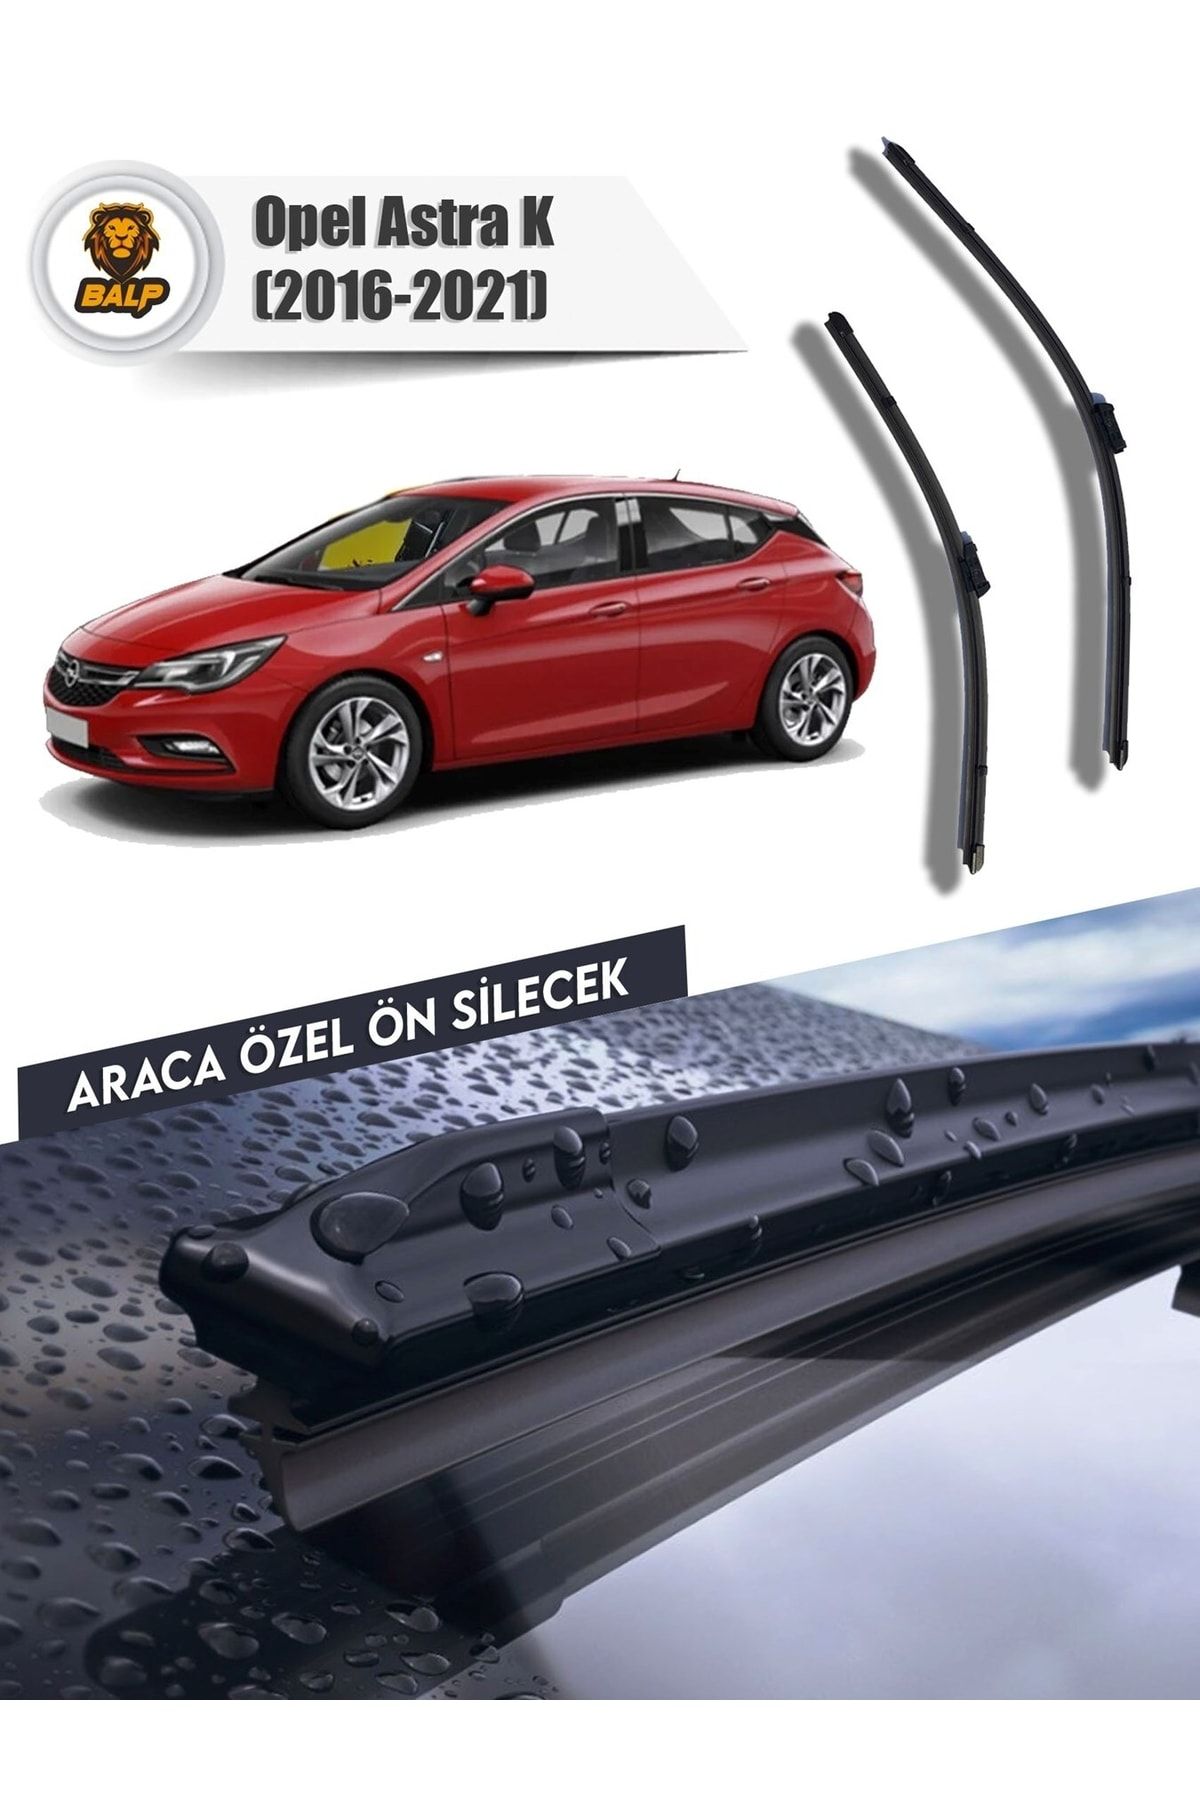 BALP Opel Astra K Muz Silecek Takımı (2016-2021) 68x63